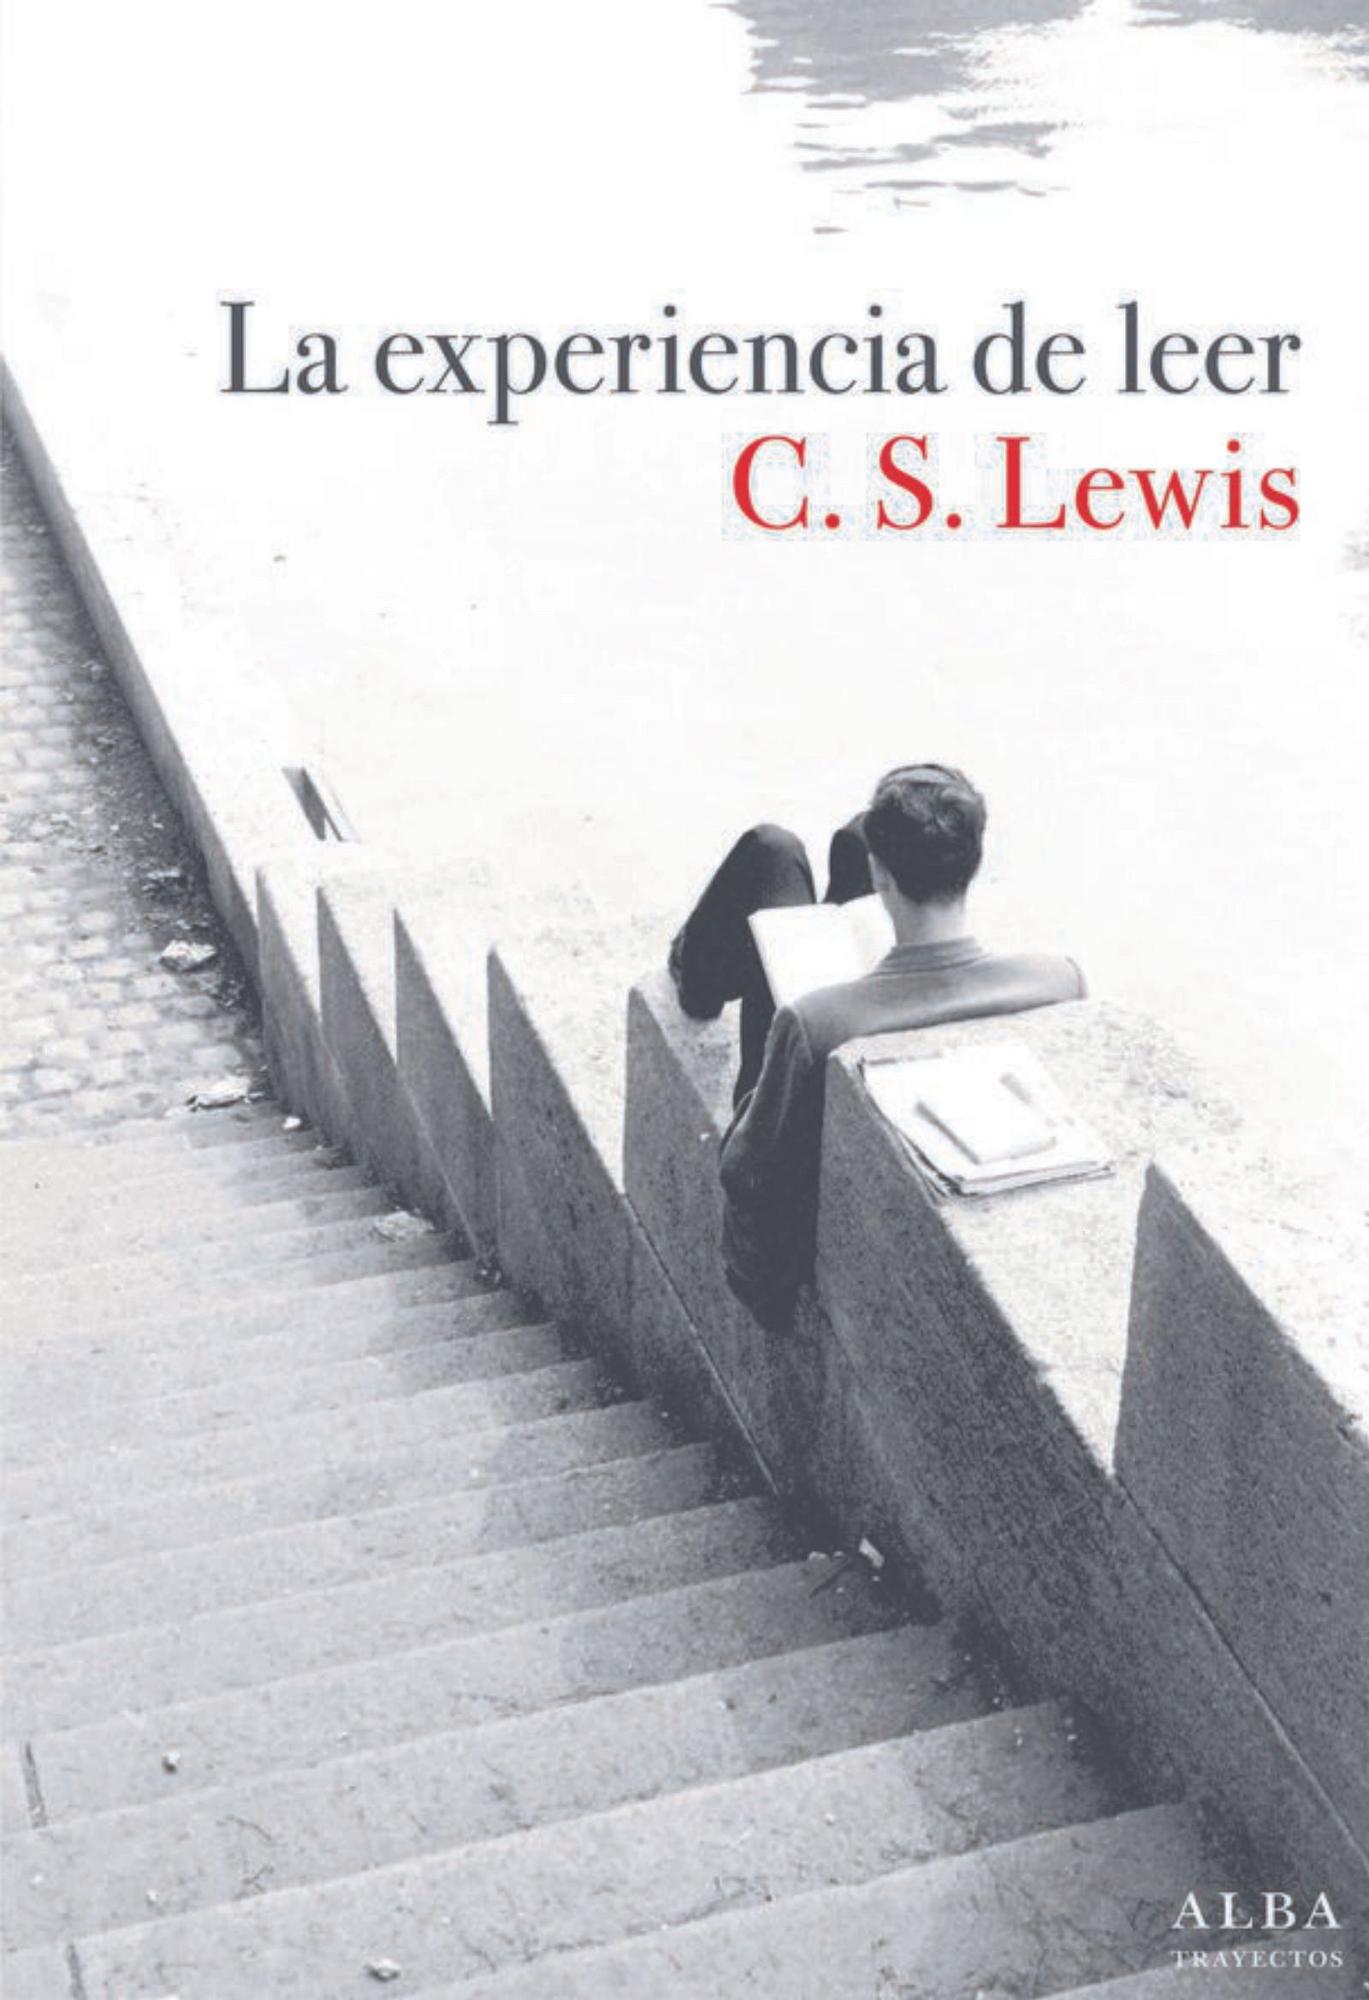 c. s. lewis  La experiencia de leer   Alba   128 páginas / 18 euros